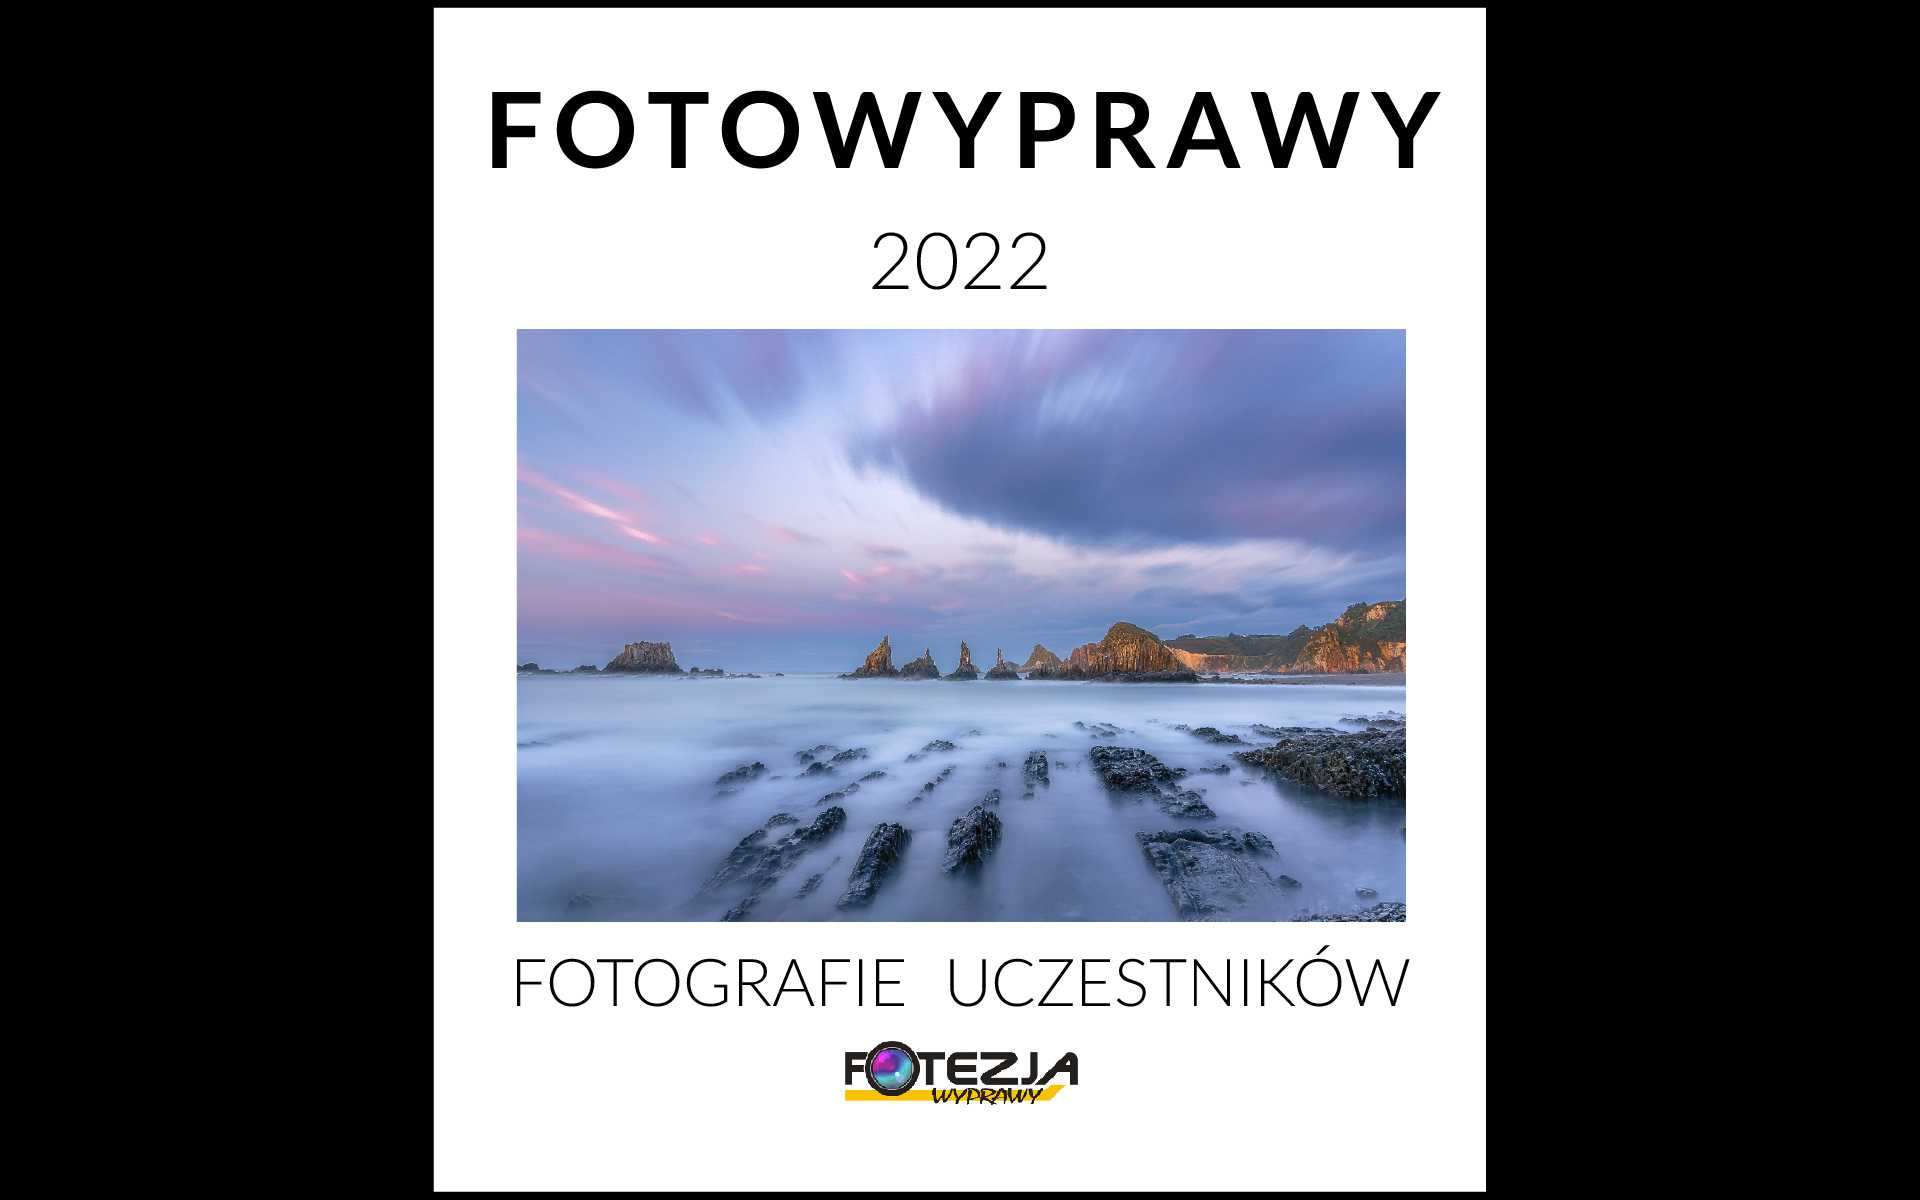 Album Fotowyprawy Fotezji 2022 - fotografie uczestników